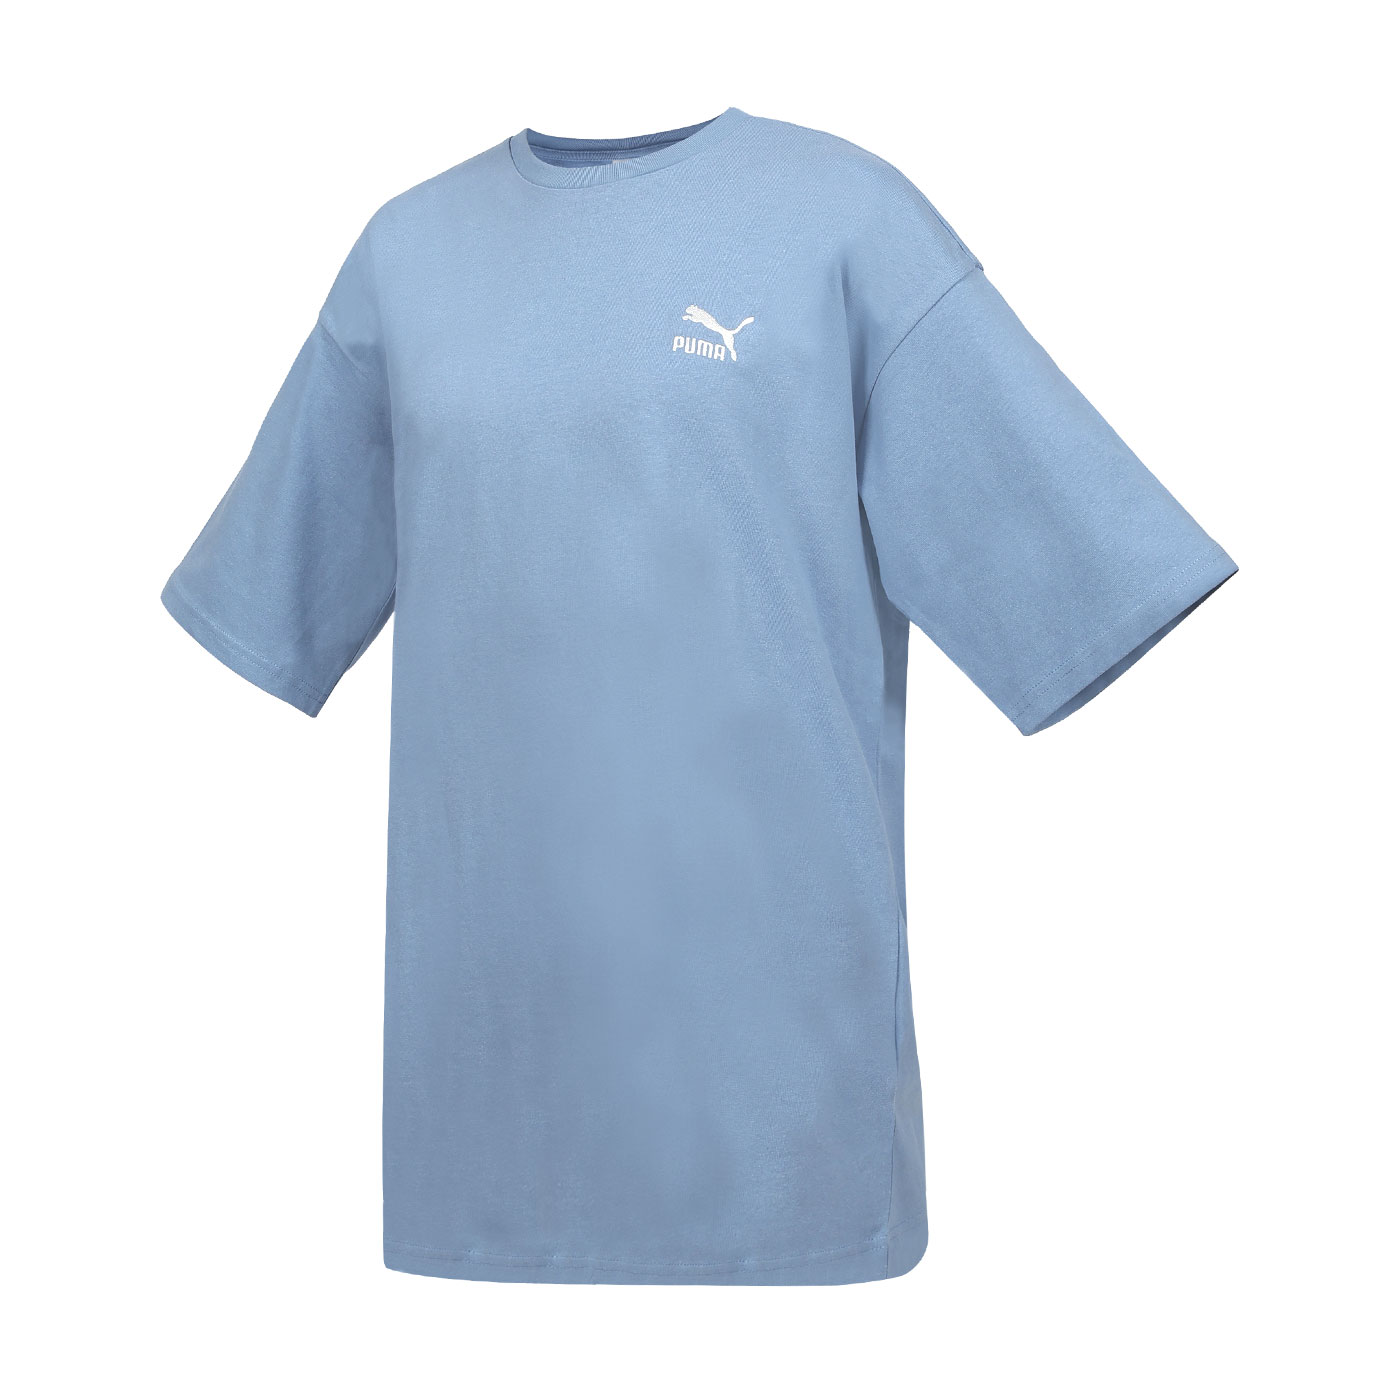 PUMA 男女款流行系列Classics寬鬆短袖T恤  67918820 - 莫蘭迪藍白